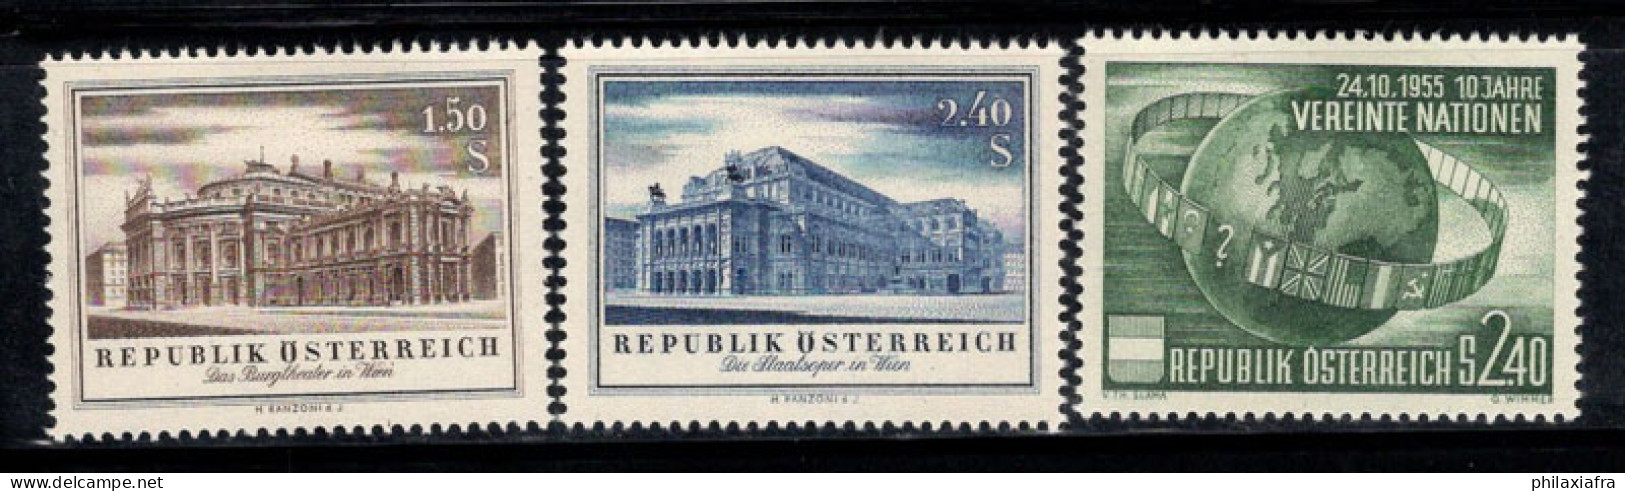 Autriche 1955 Mi. 1020-1022 Neuf * MH 100% ONU, THÉÂTRE, Opéra - Ungebraucht